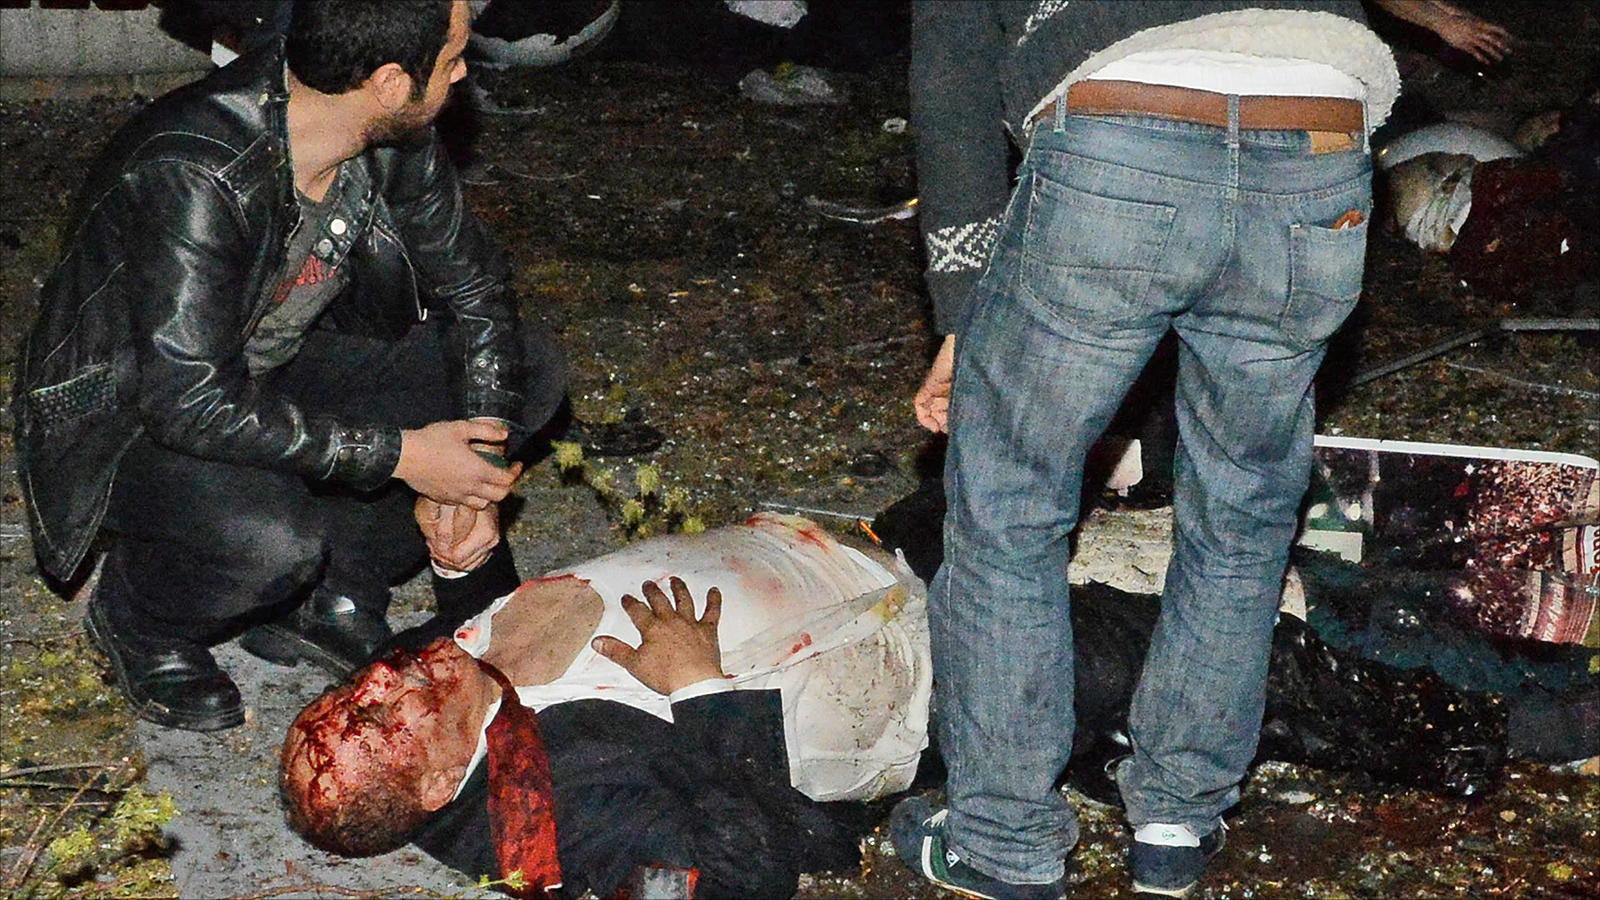 ‪عدد من جرحى تفجير أنقرة حالتهم حرجة وهو ما يشير إلى احتمال ارتفاع حصيلة القتلى‬ (الأوروبية)